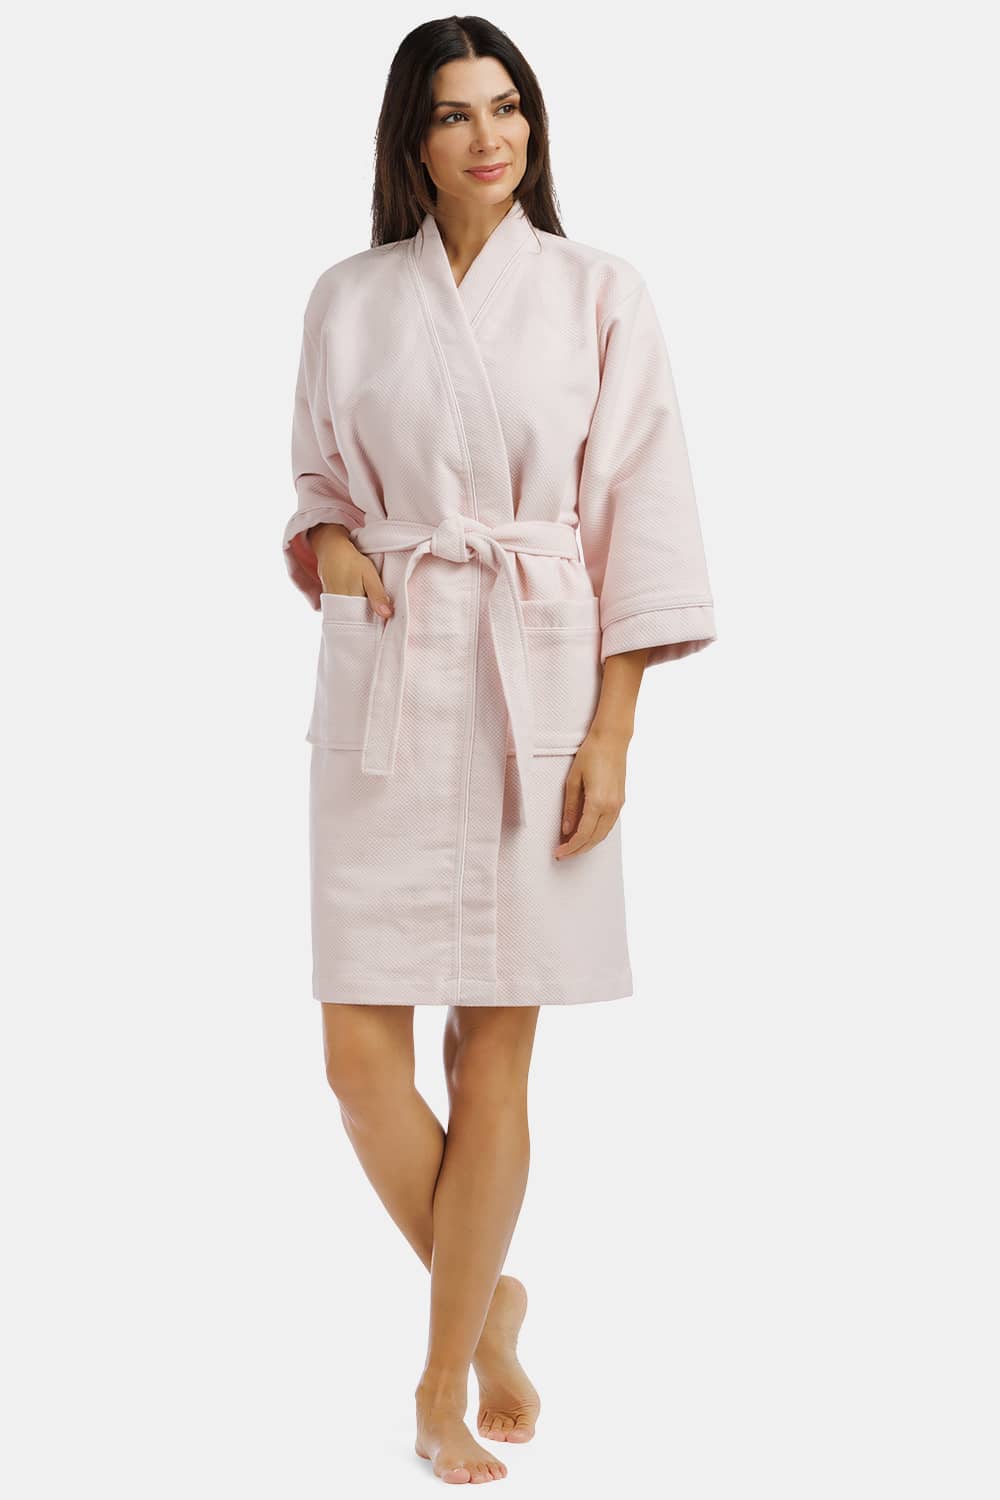 Women's Robes, Modal-Cotton Kimono Style Spa Robe